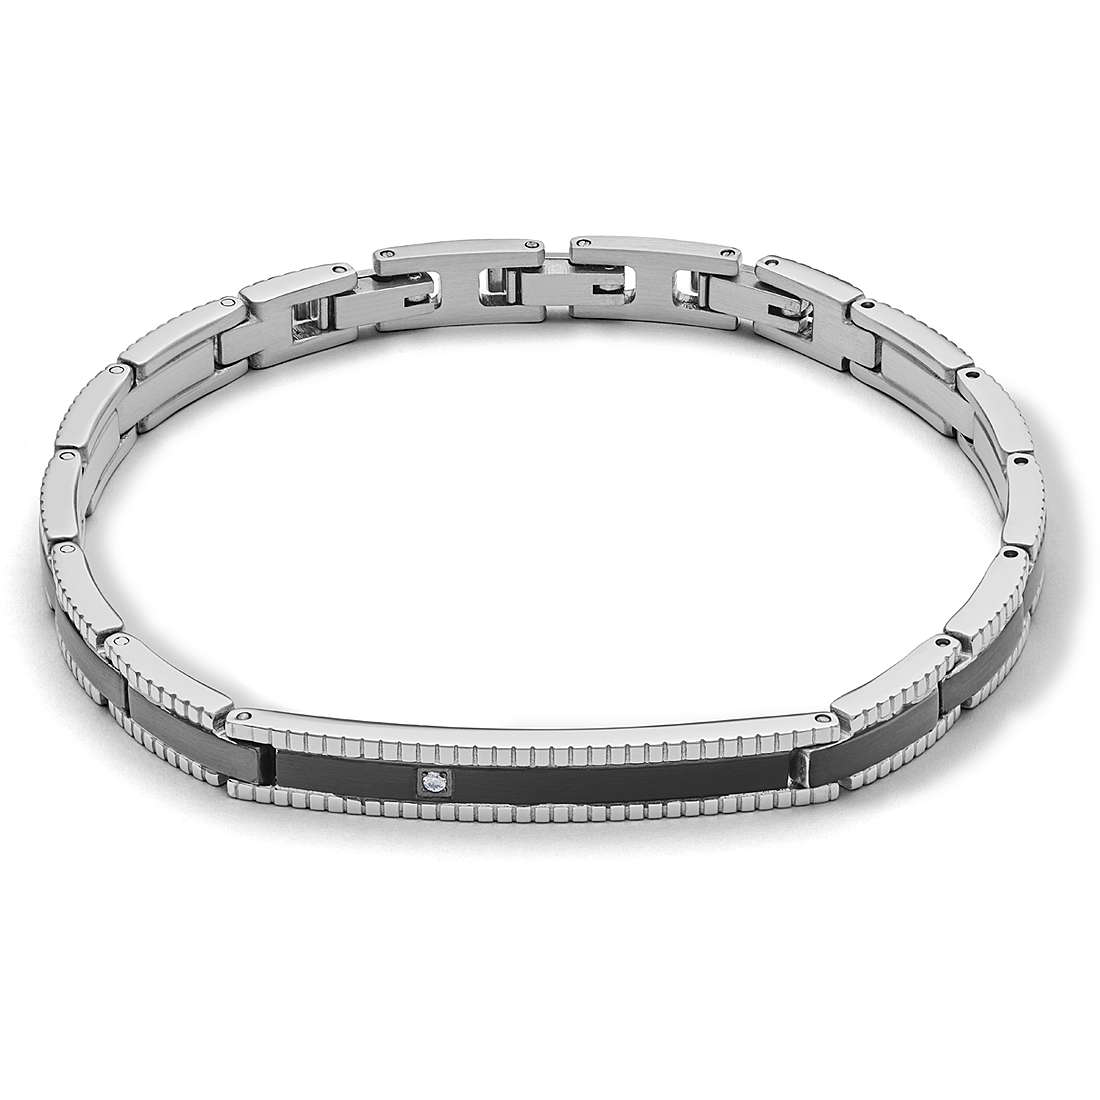 bracelet man jewellery Comete Tyres UBR 1013